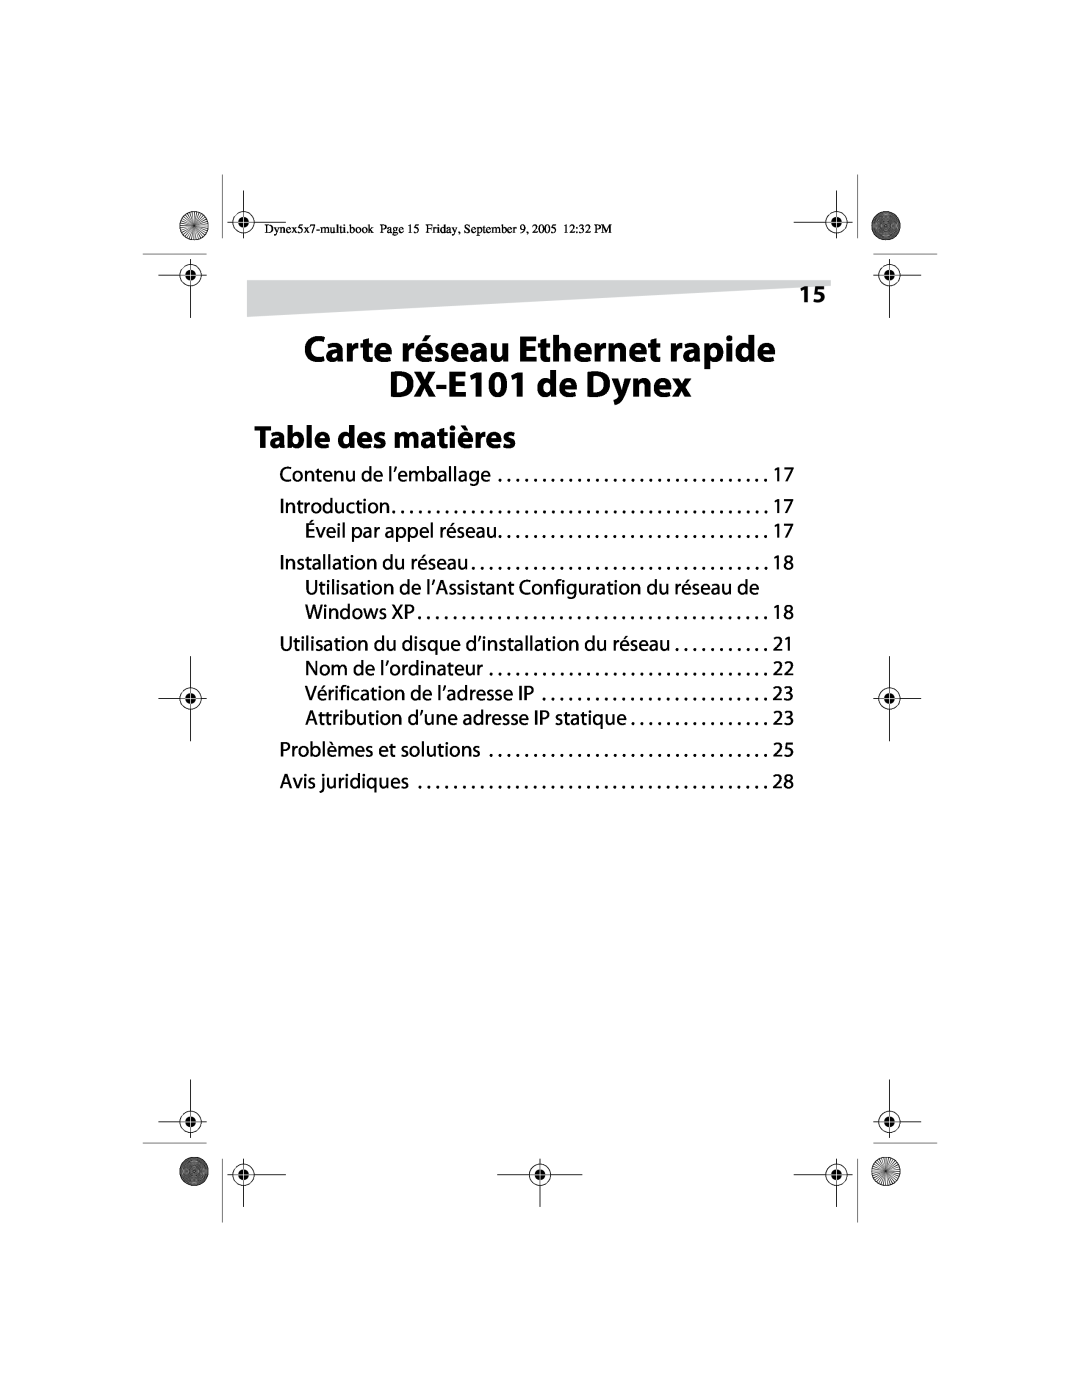 Dynex manual Carte réseau Ethernet rapide DX-E101 de Dynex, Table des matières, Contenu de l’emballage 